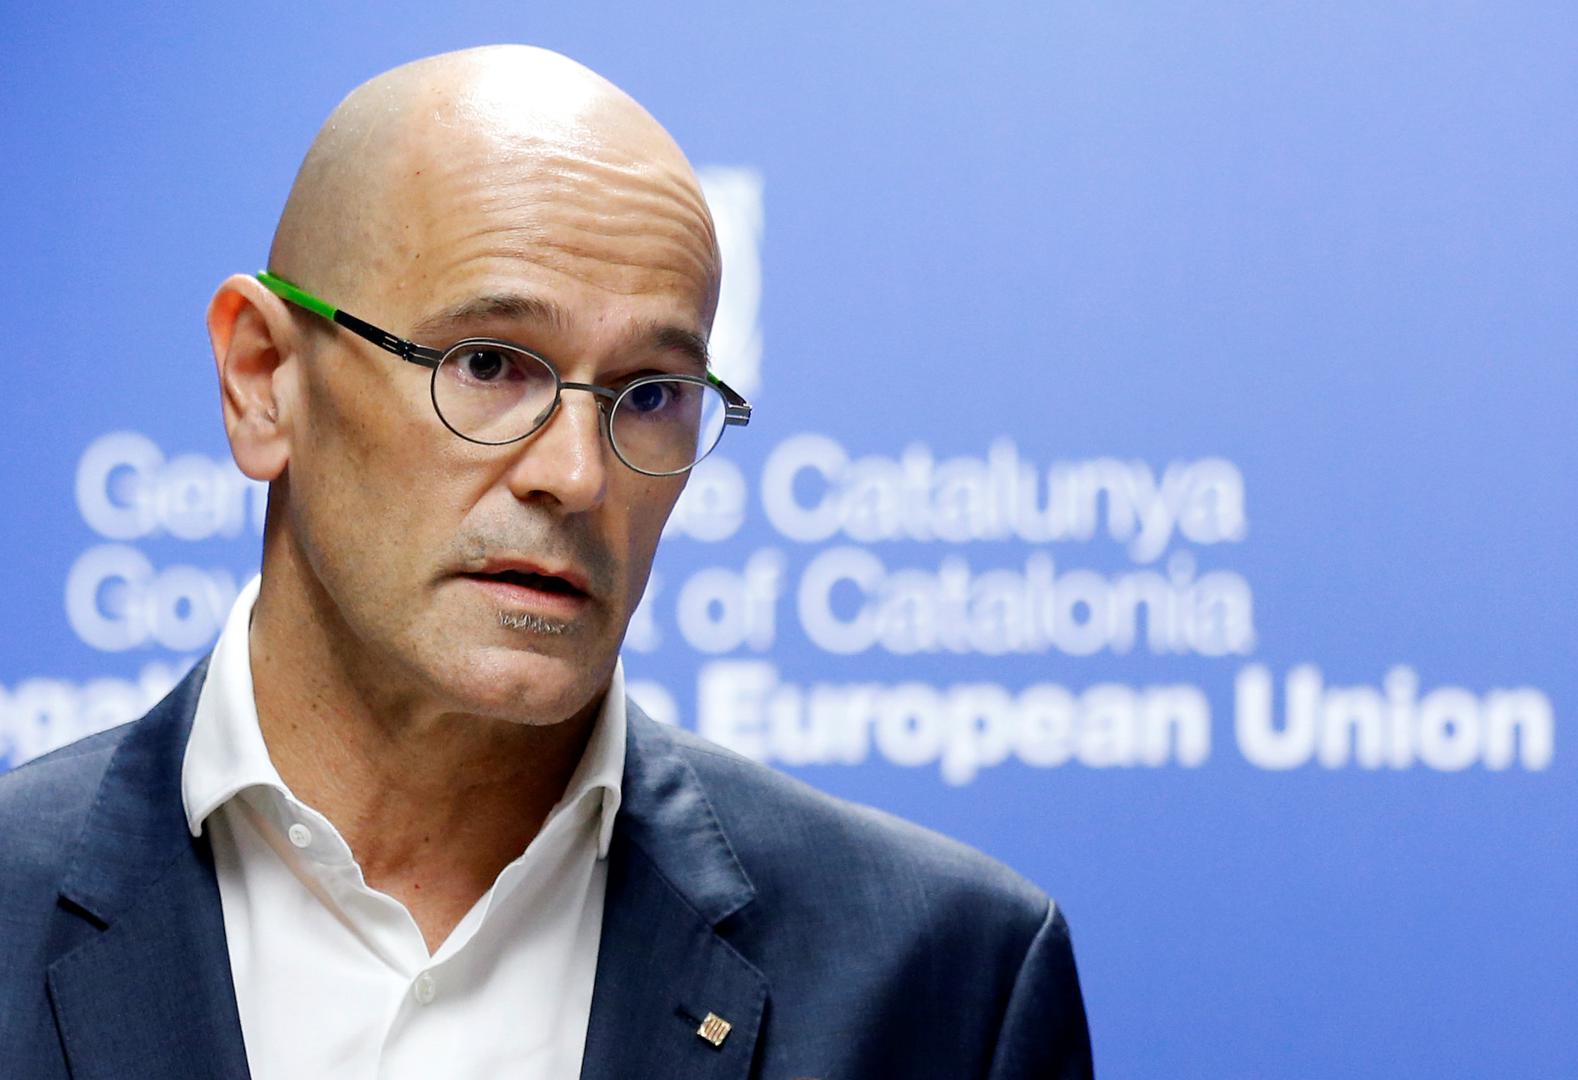 Katalonski dužnosnik za vanjske poslove Raul Romeva